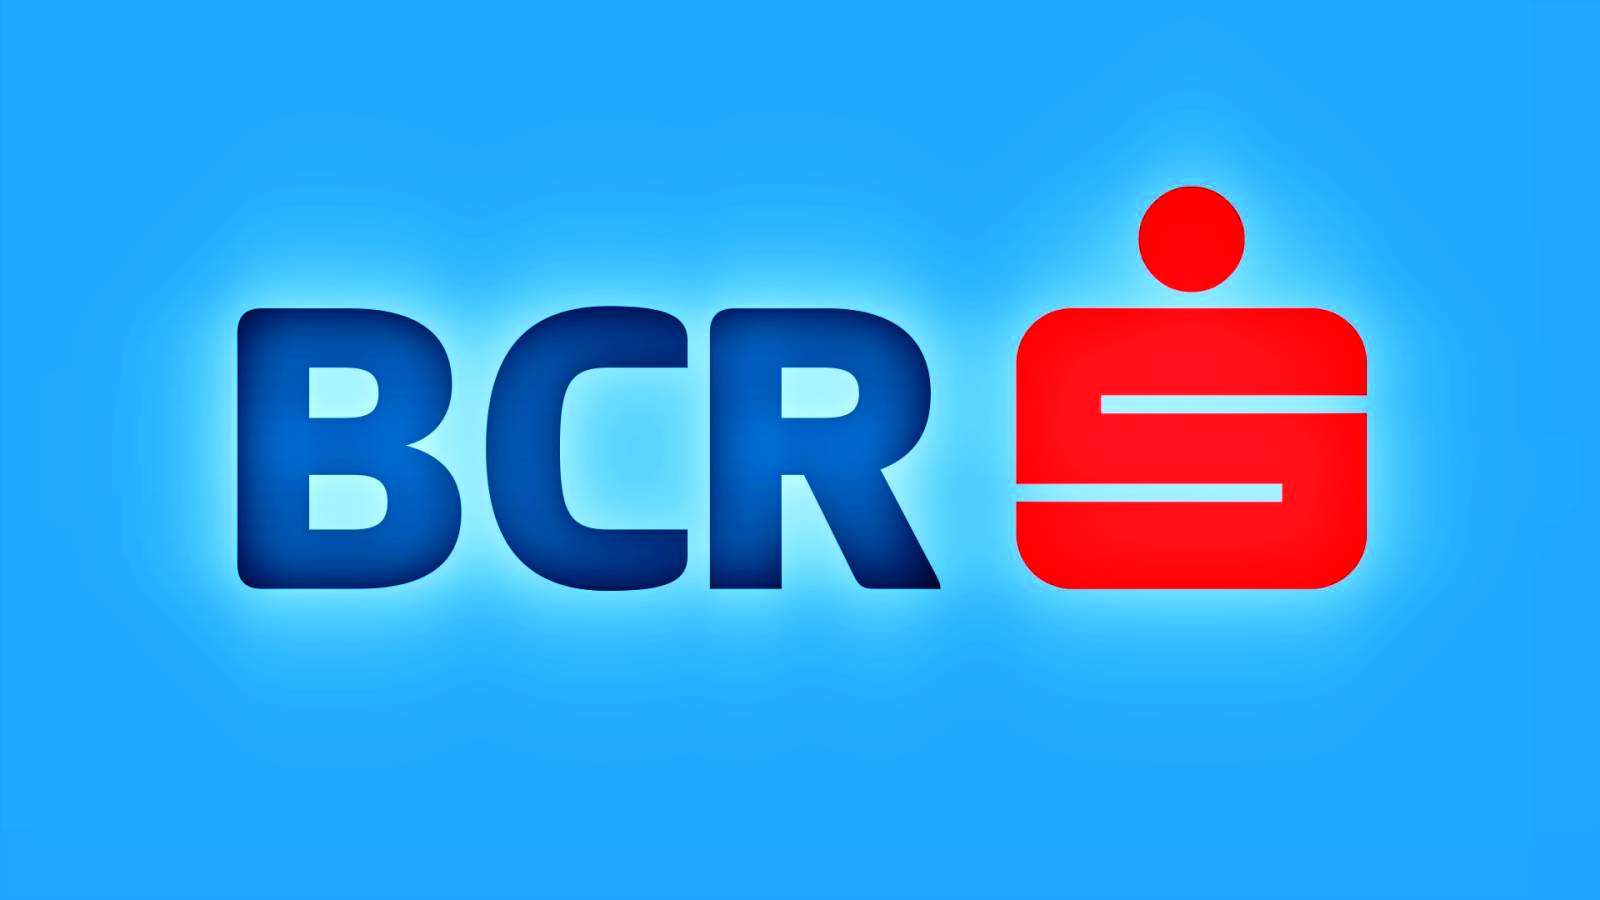 BCR Rumänien Kundeninformation Auferlegte Maßnahme weltweit